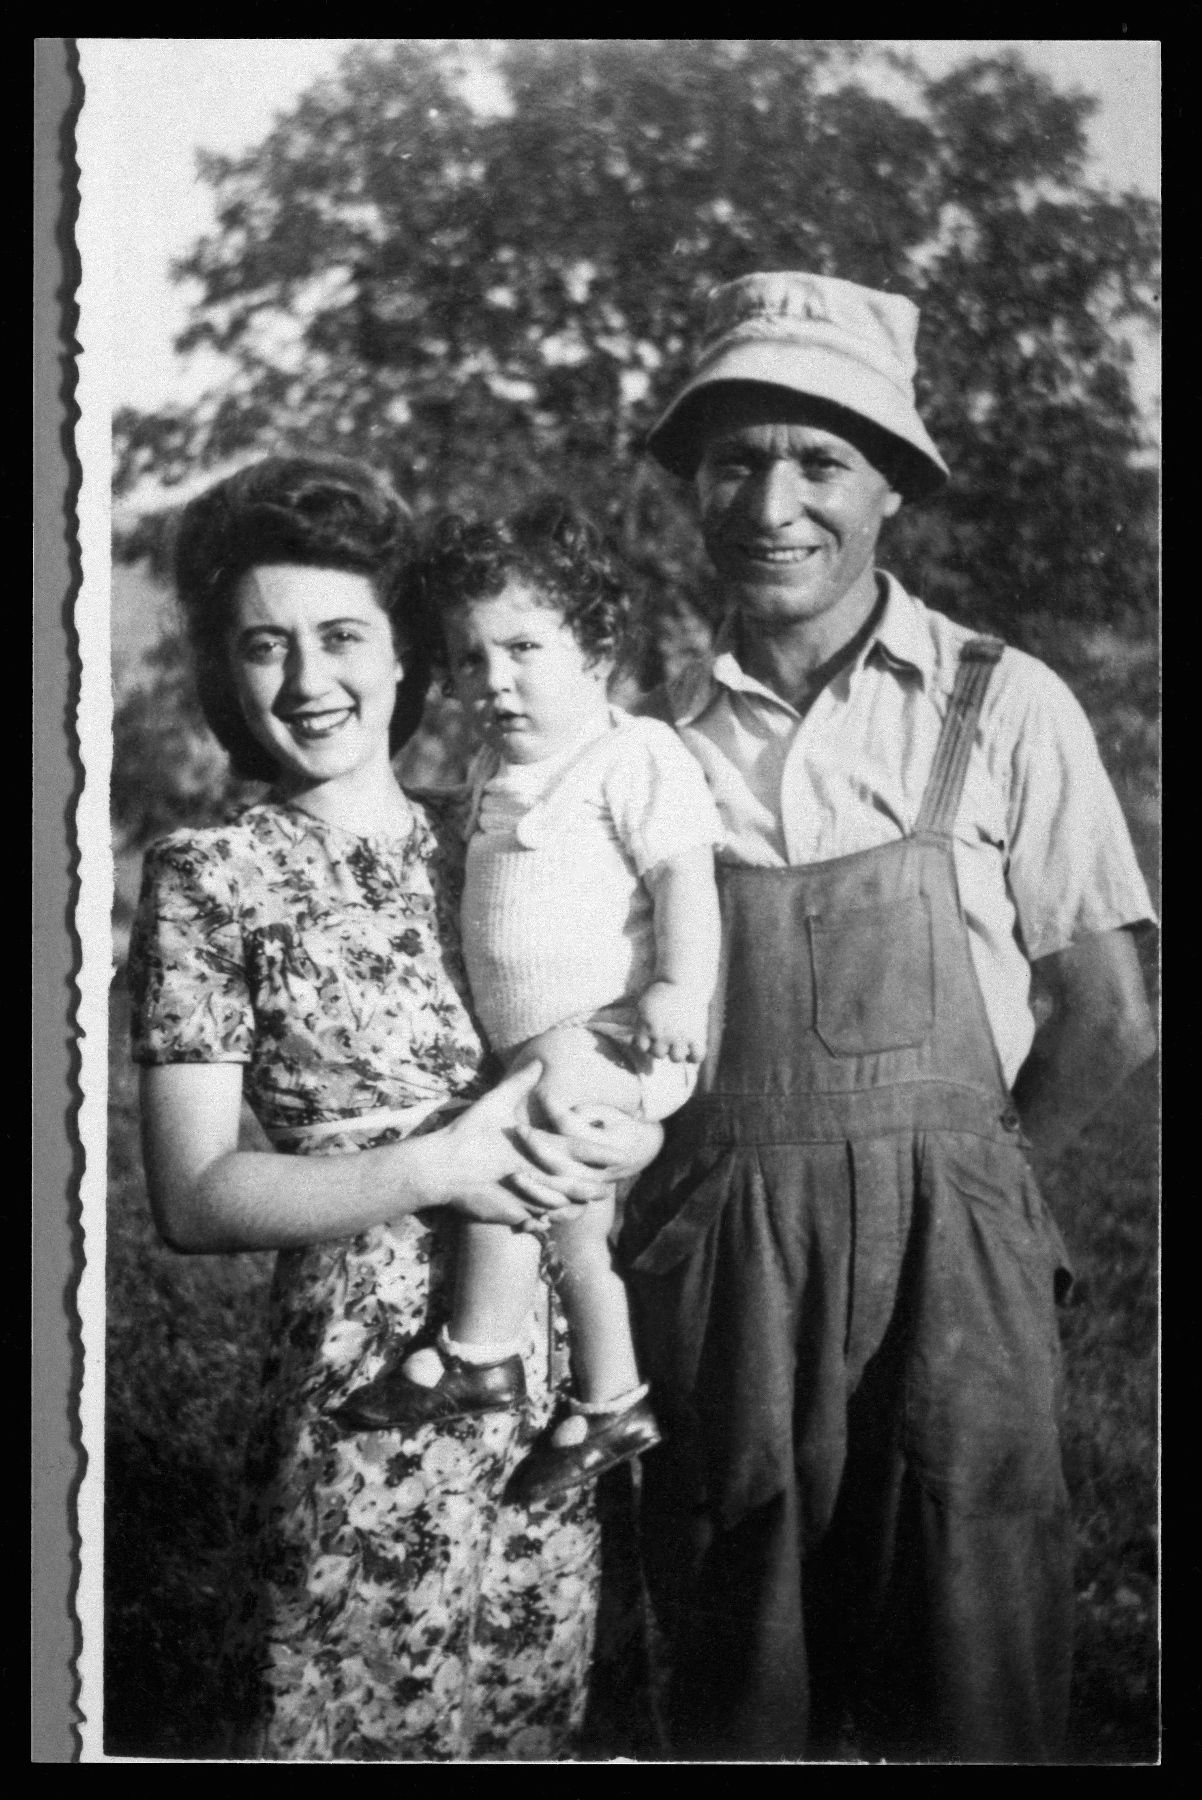 La famille Katz, réfugiés juifs autrichiens, à Vercheny. Médecin ayant fui le nazisme, Otto Katz entre en France le 12 mai 1940 et est interné au 352e GTE de Crest. Placé comme ouvrier agricole à Vercheny, il se cache avec sa famille pour échapper aux raf